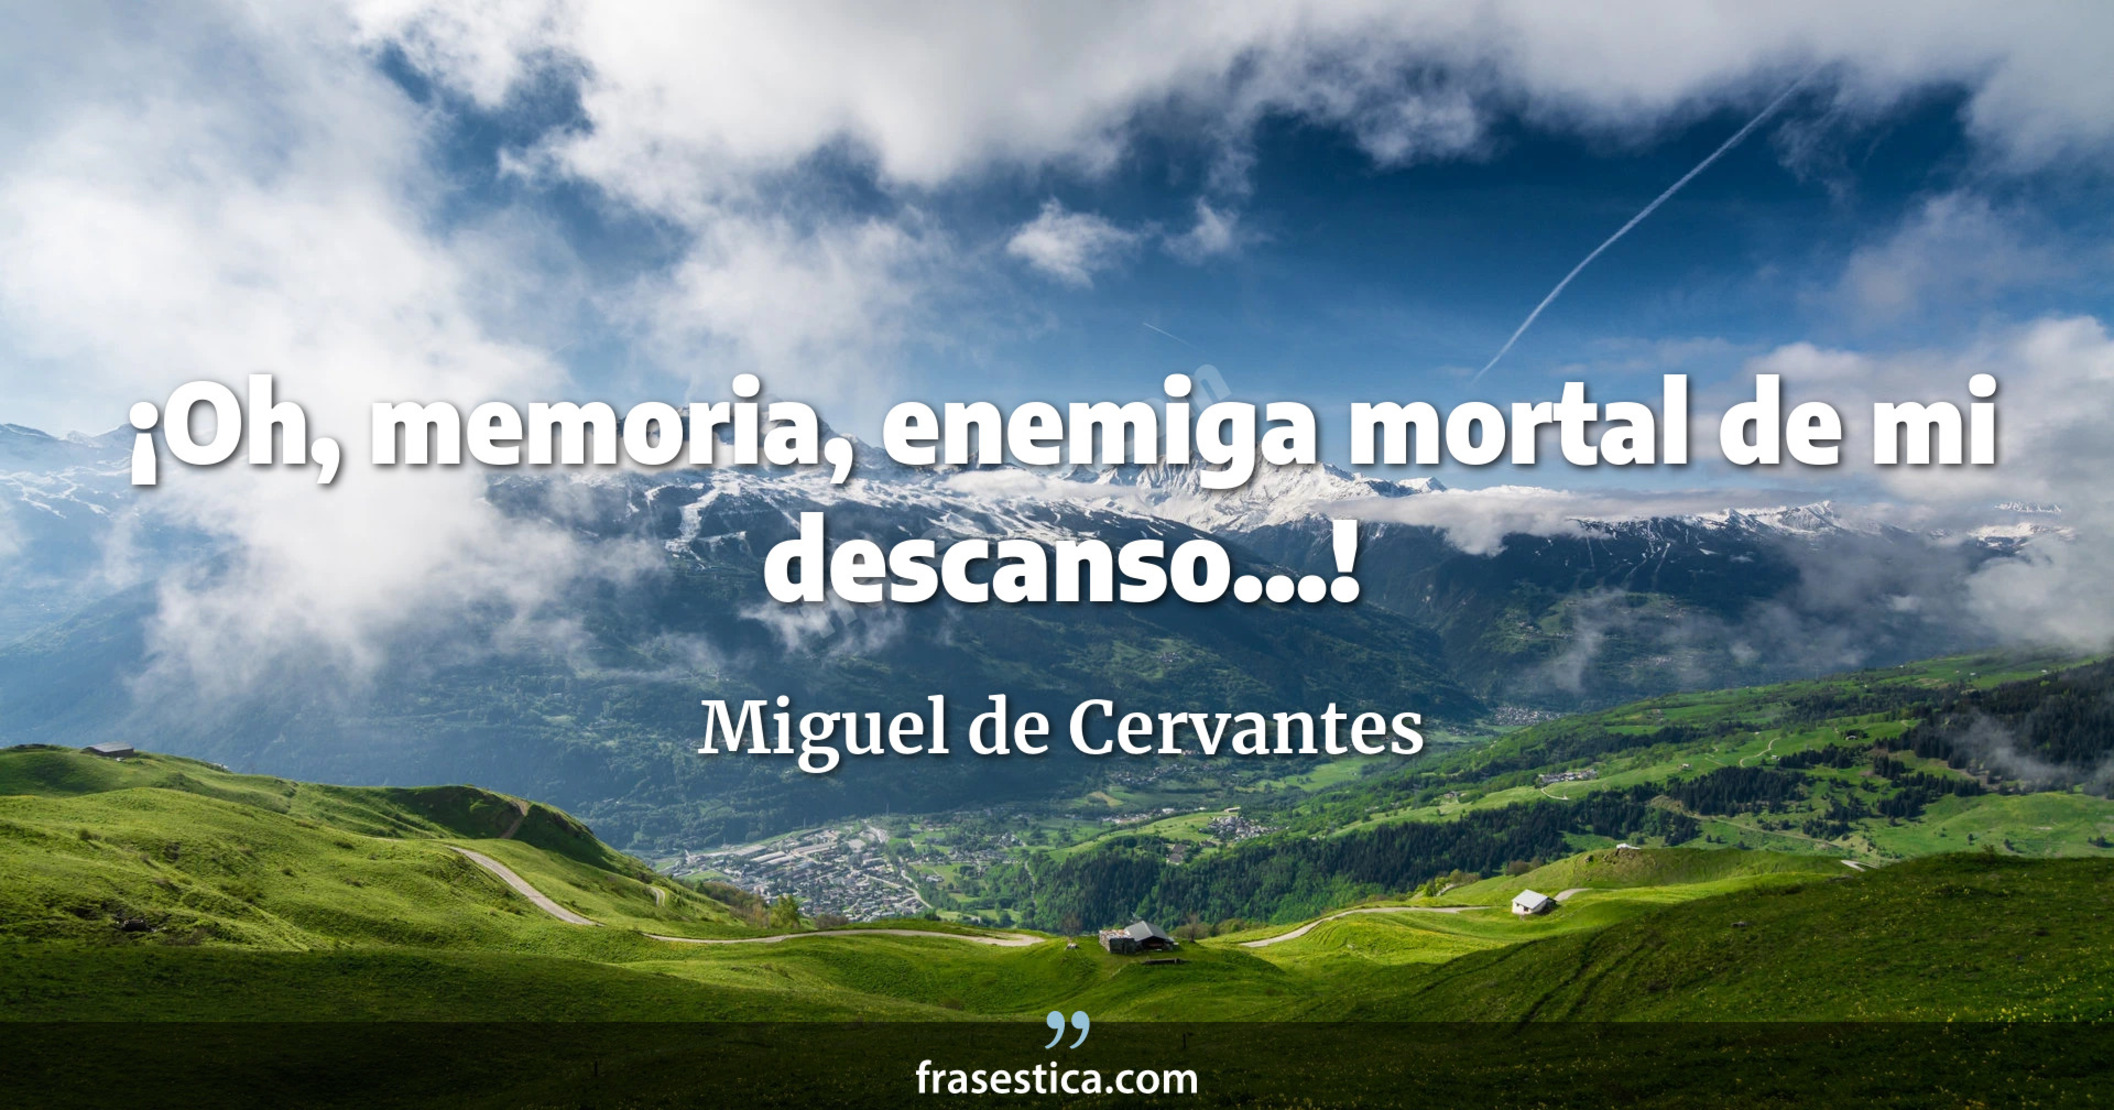 ¡Oh, memoria, enemiga mortal de mi descanso...! - Miguel de Cervantes